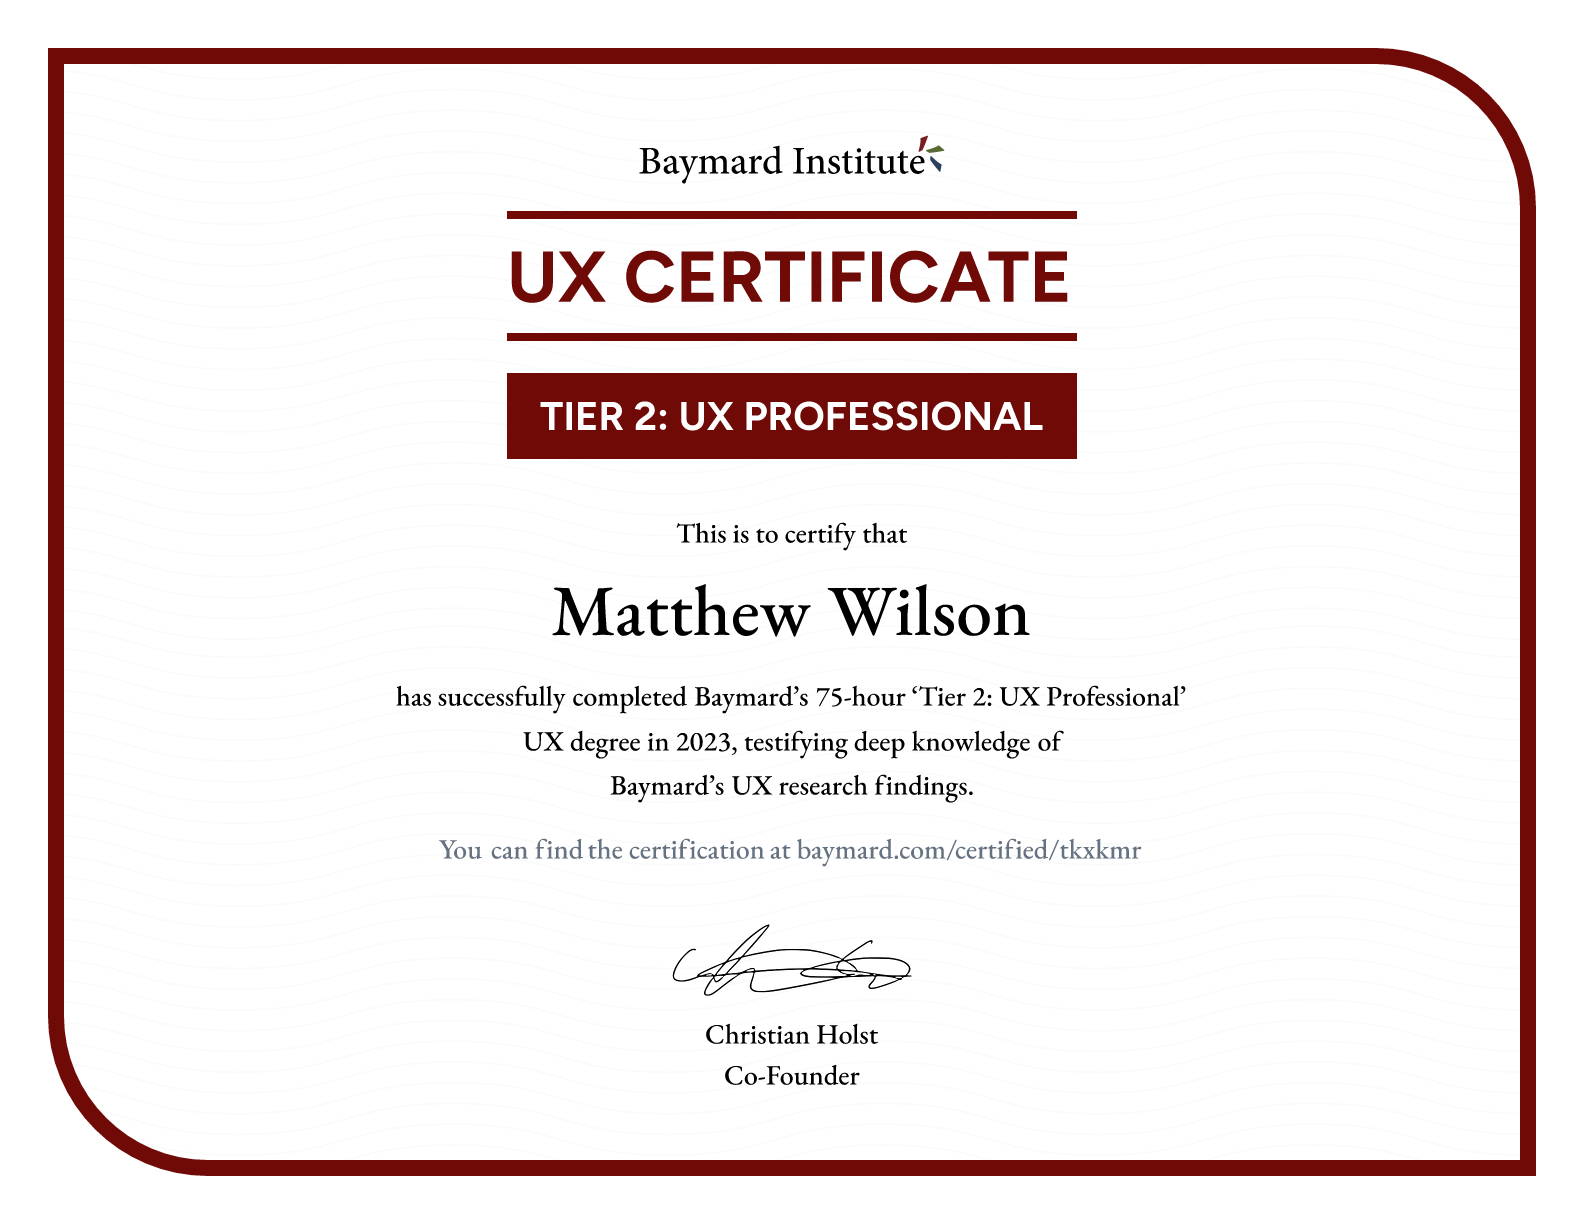 Matthew Wilson’s certificate